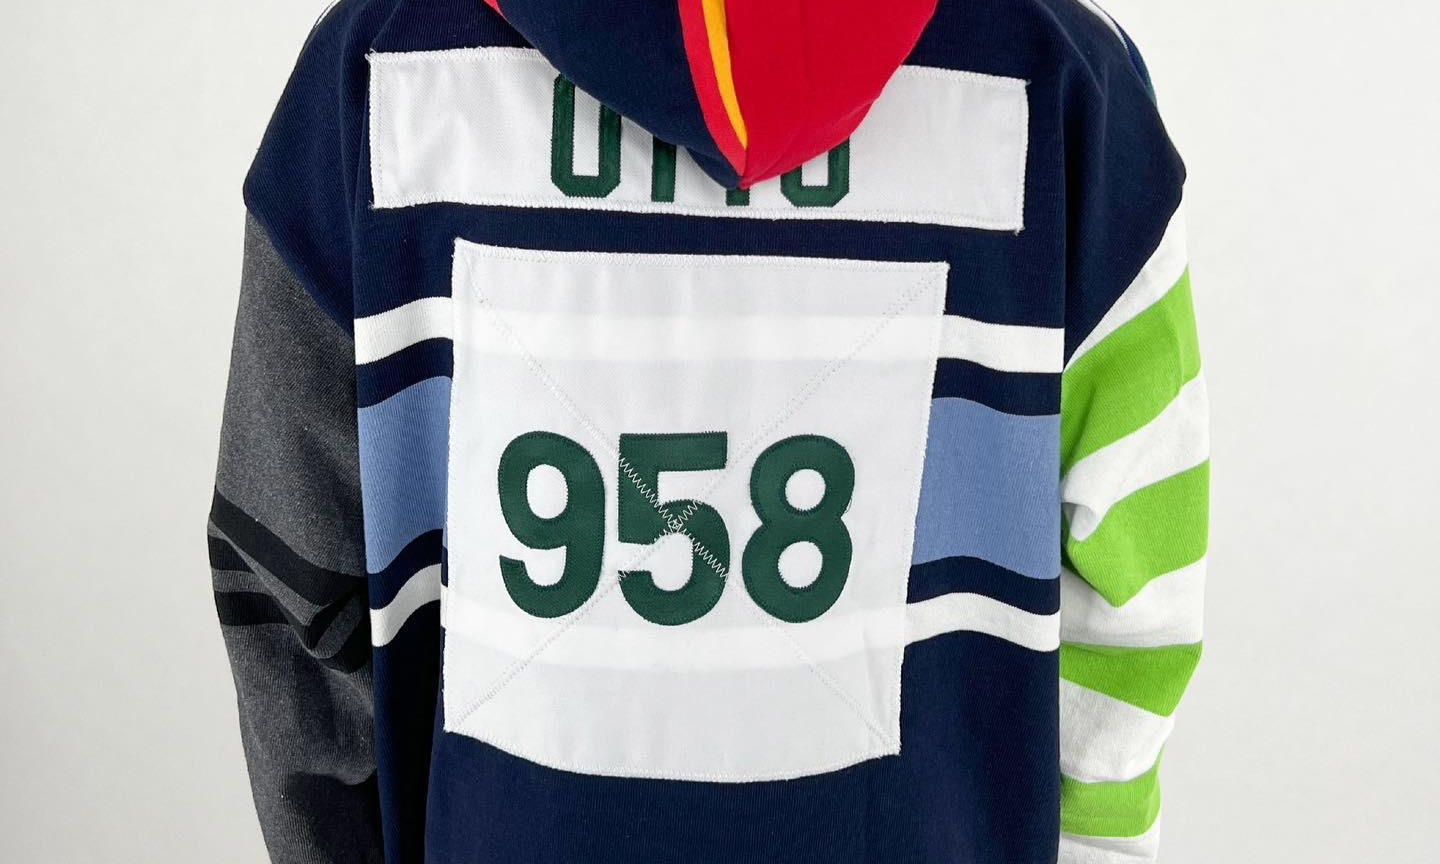 OTTO 958 即将发售橄榄球条纹连帽衫